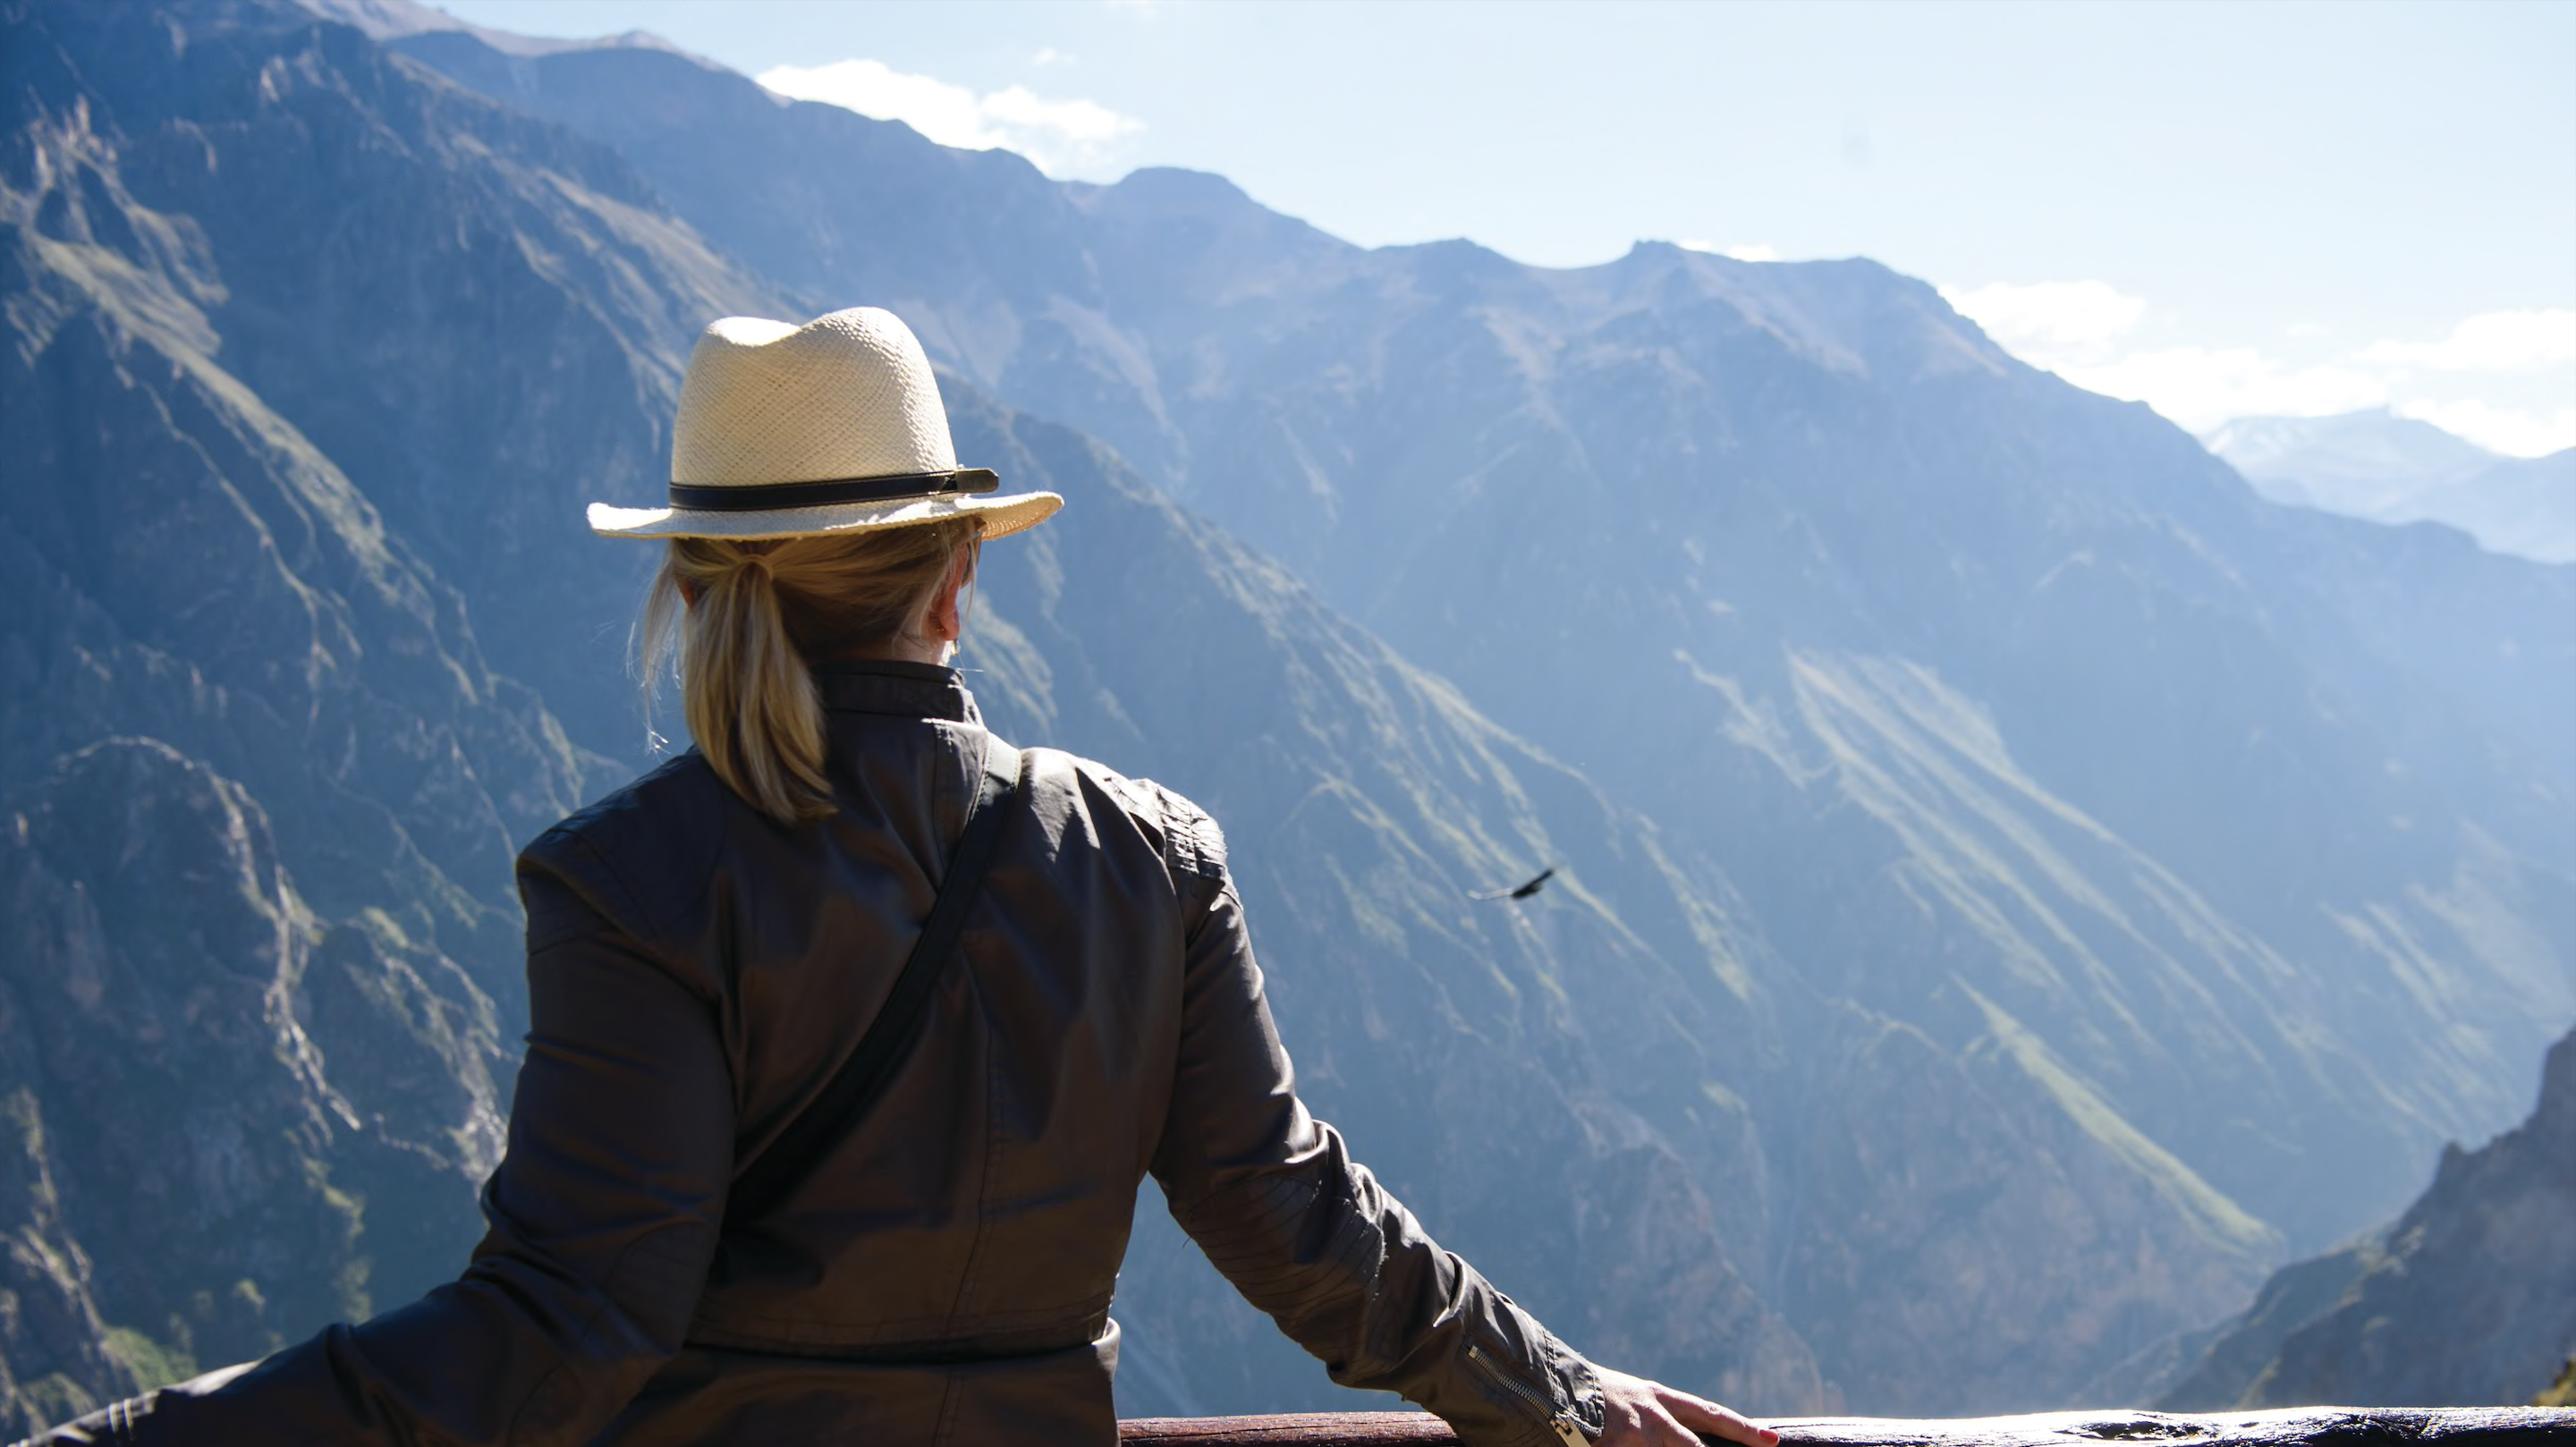 Woman bird-watching at Belmond Las Casitas in Colca Canyon, Peru